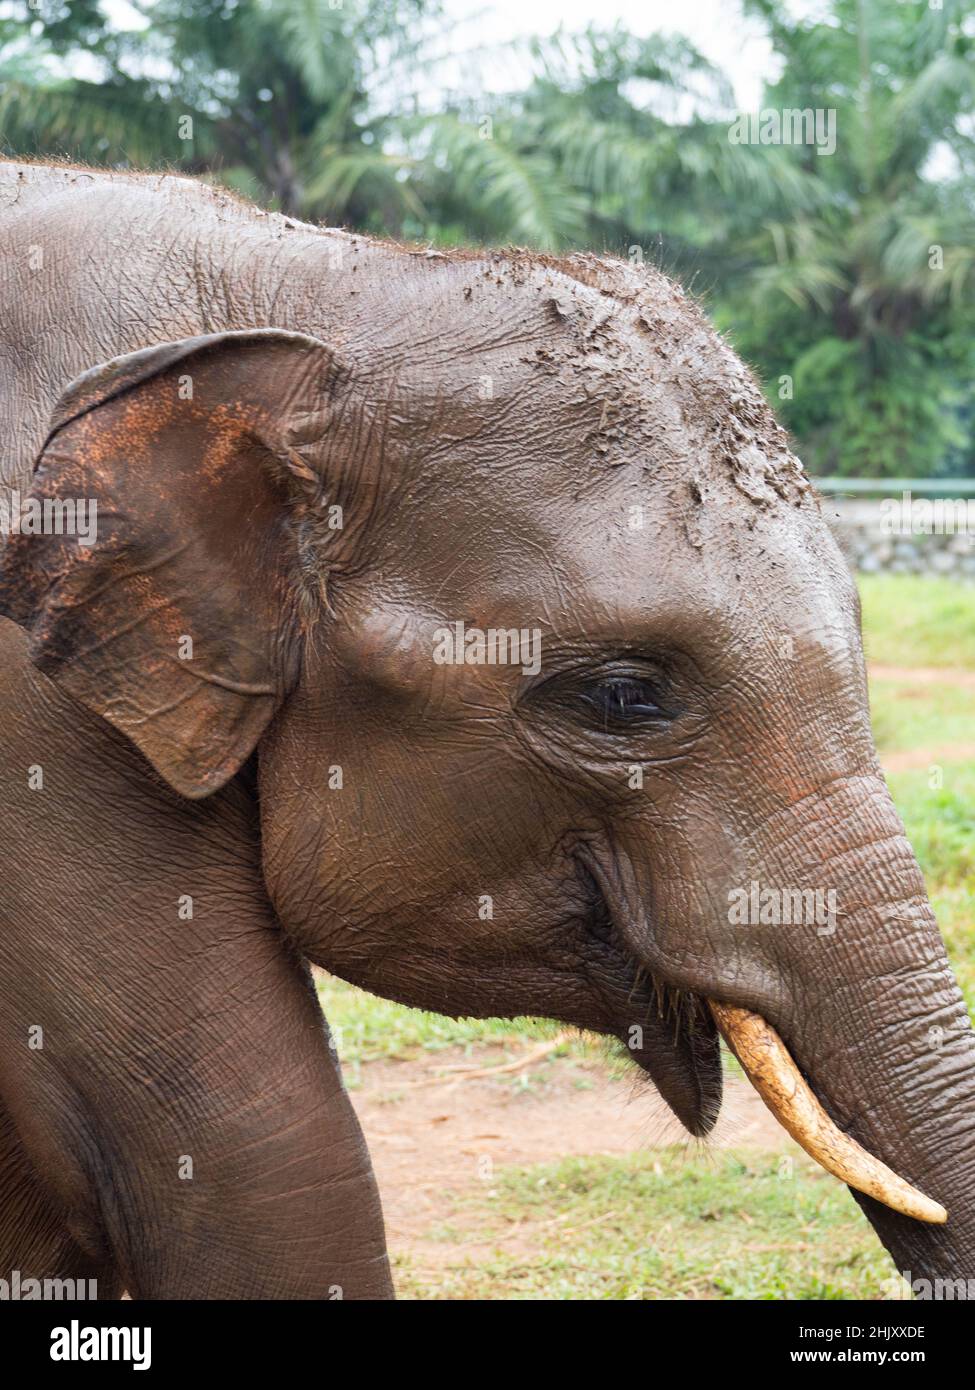 Photo des éléphants dans un zoo après avoir pris un bain de boue Banque D'Images